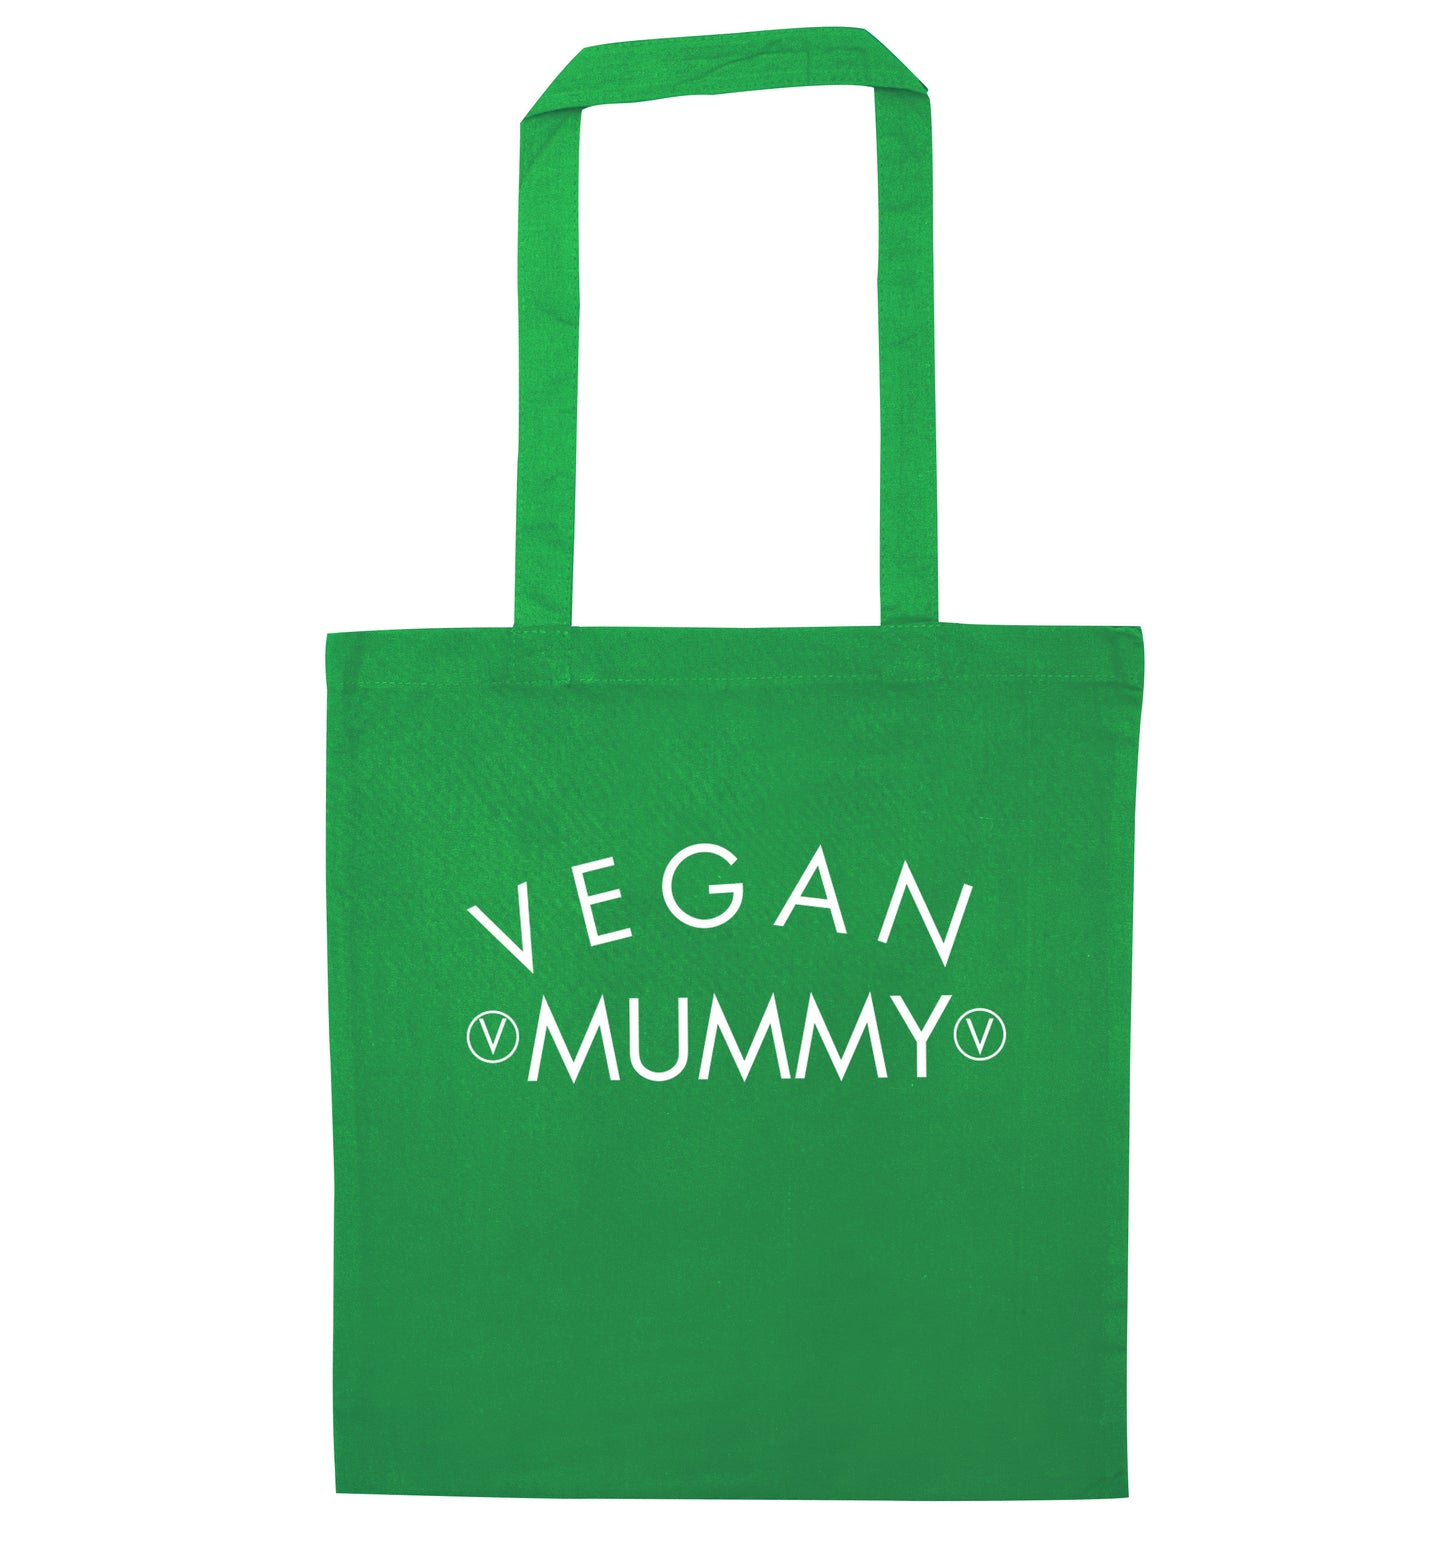 Vegan mummy green tote bag